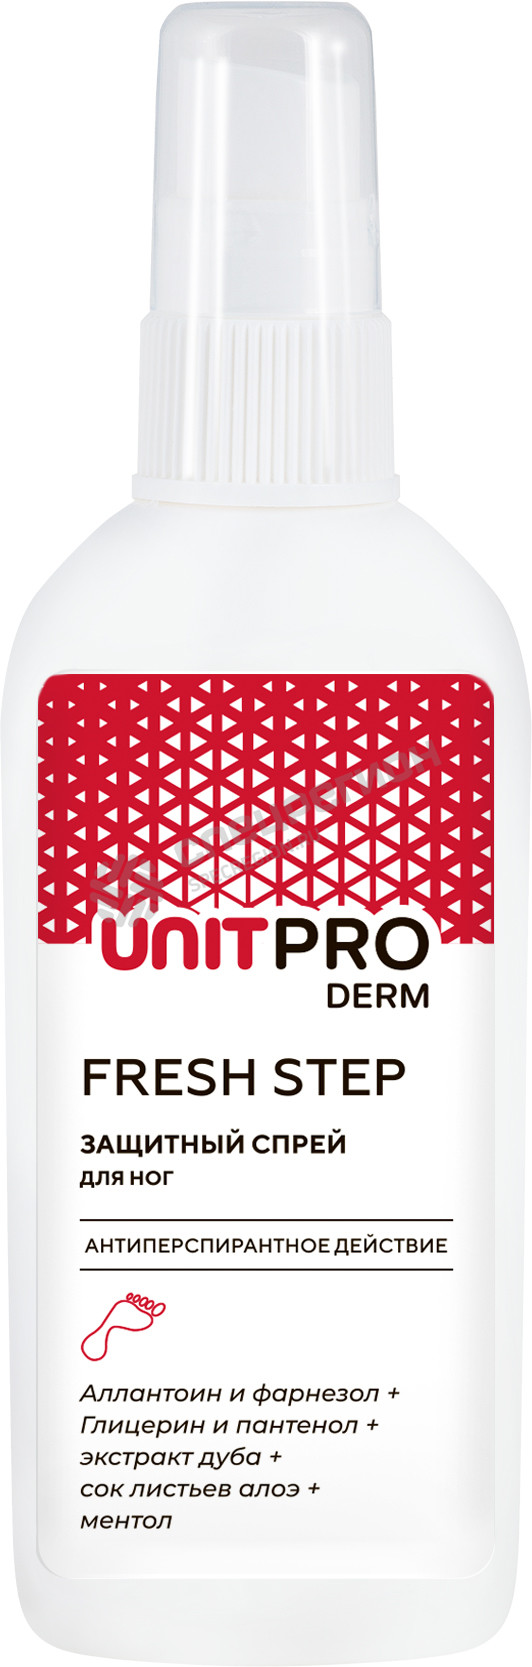 Фотография Спрей лосьон Unitpro Derm Fresh Step для защиты кожи ног, 100 мл